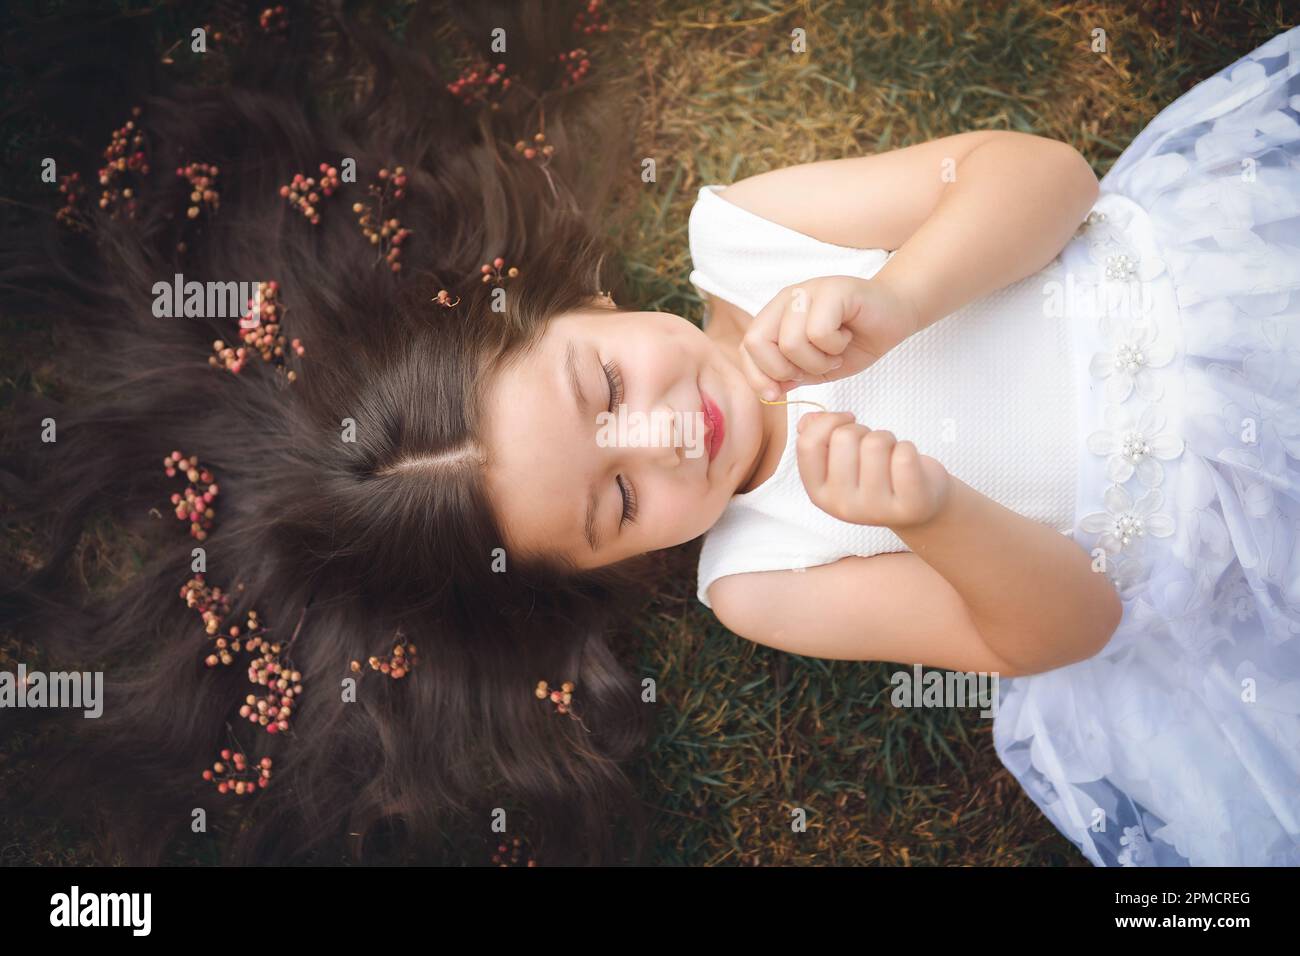 Bambina in abito bianco sdraiato sull'erba, lei è sorridente, i suoi capelli è molto lunga e principessa-come, lei gioca con le sue mani sul tema del bambino Foto Stock